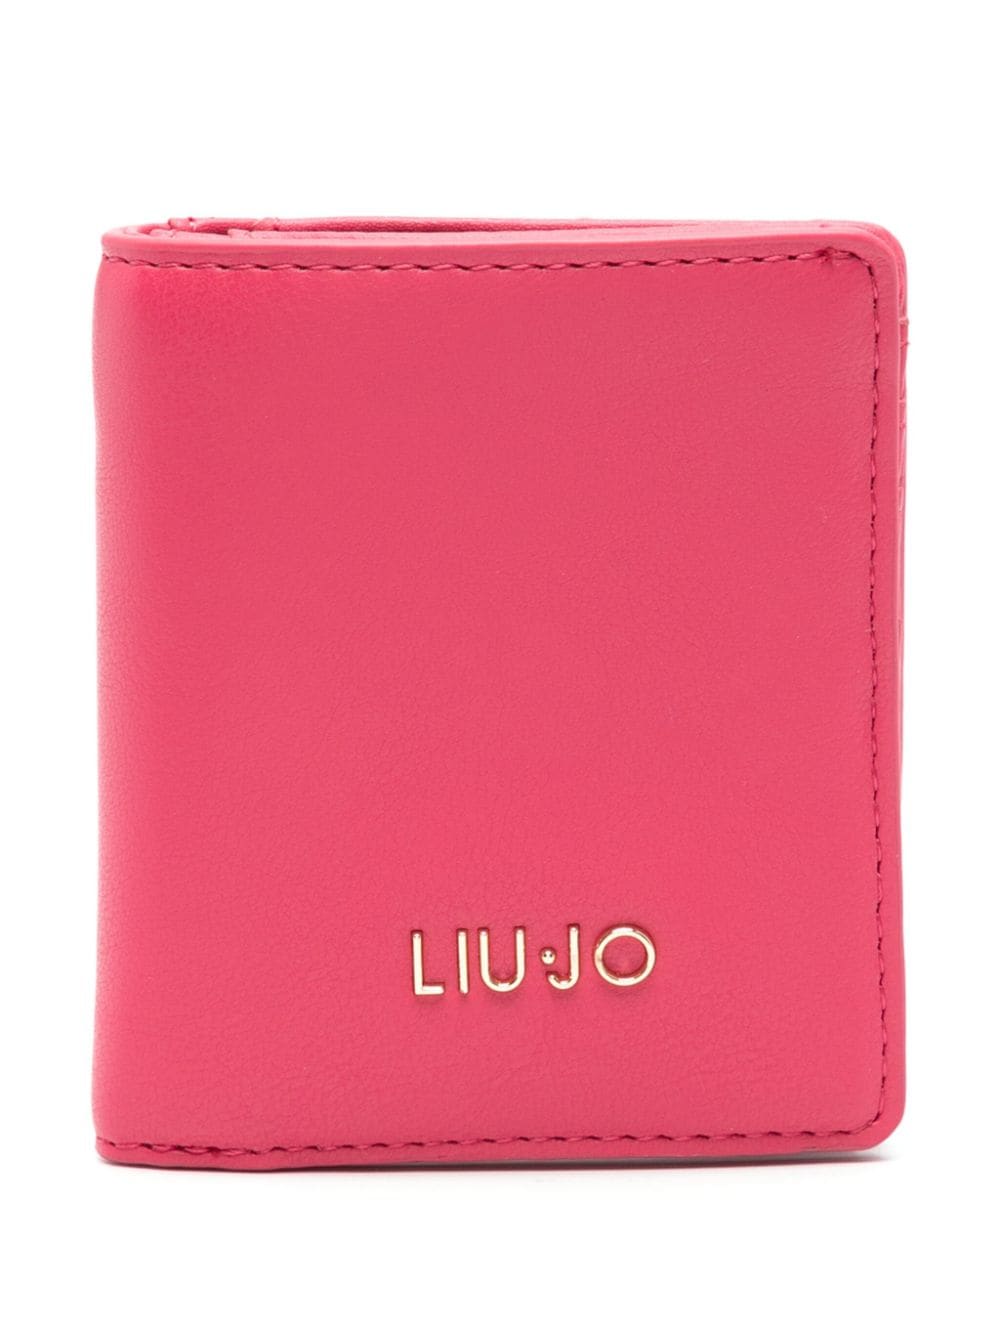 LIU JO logo-lettering wallet - Rosa von LIU JO